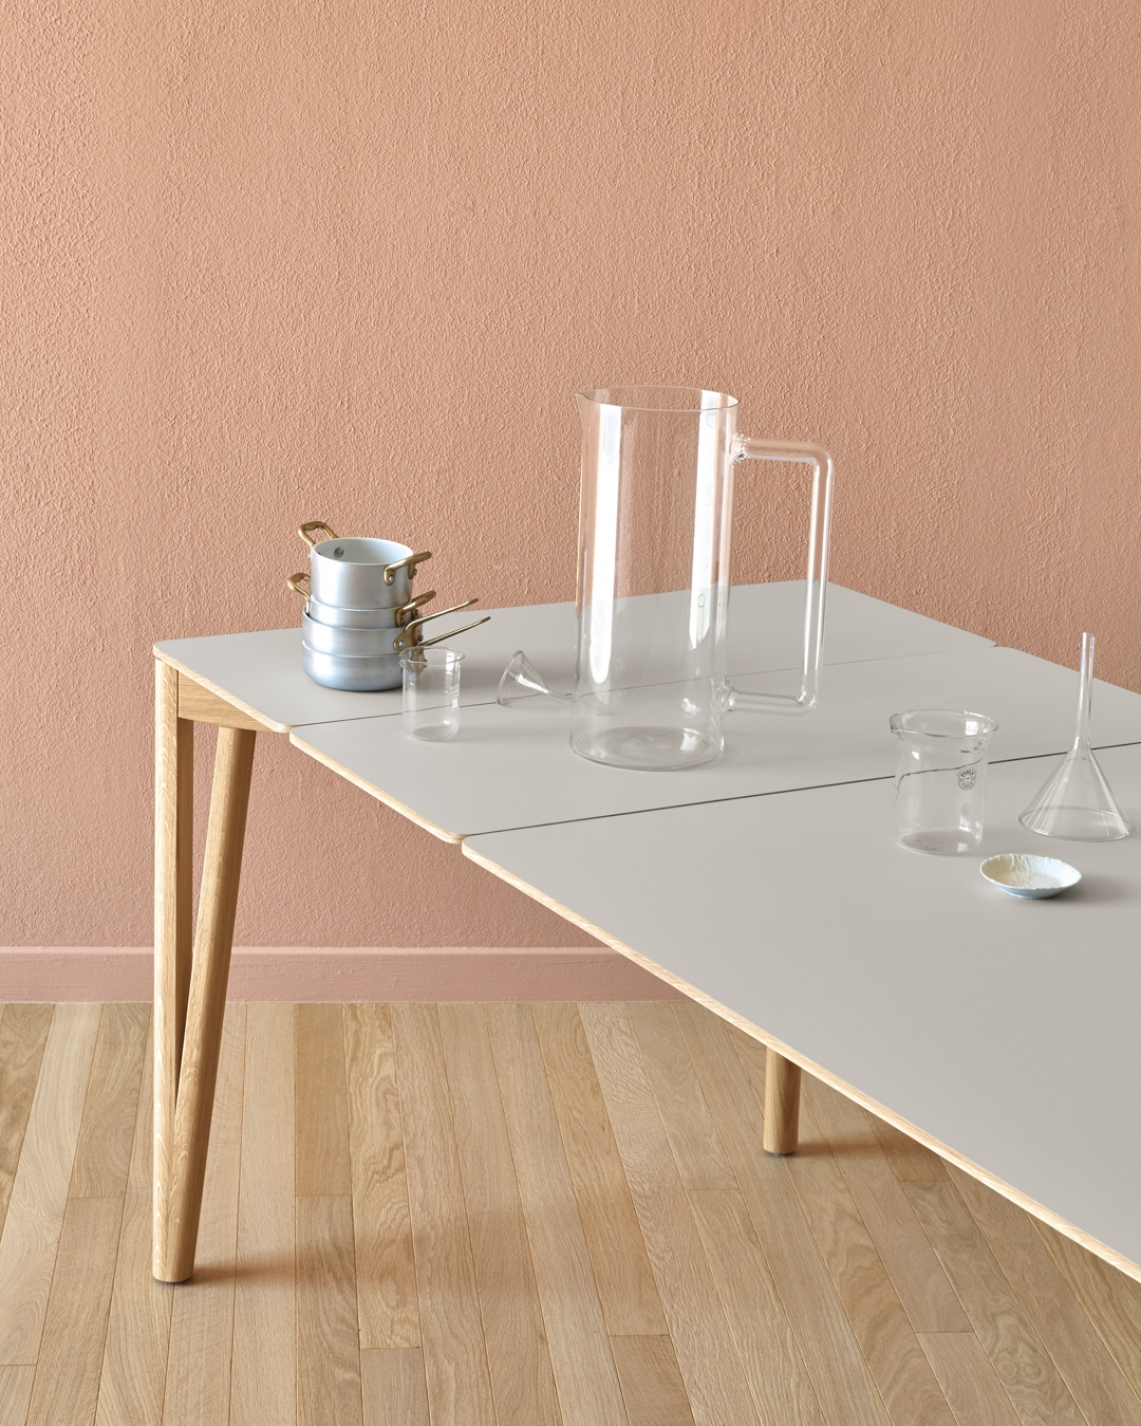 意大利家具Miniforms的Decapo 长餐桌 细节图